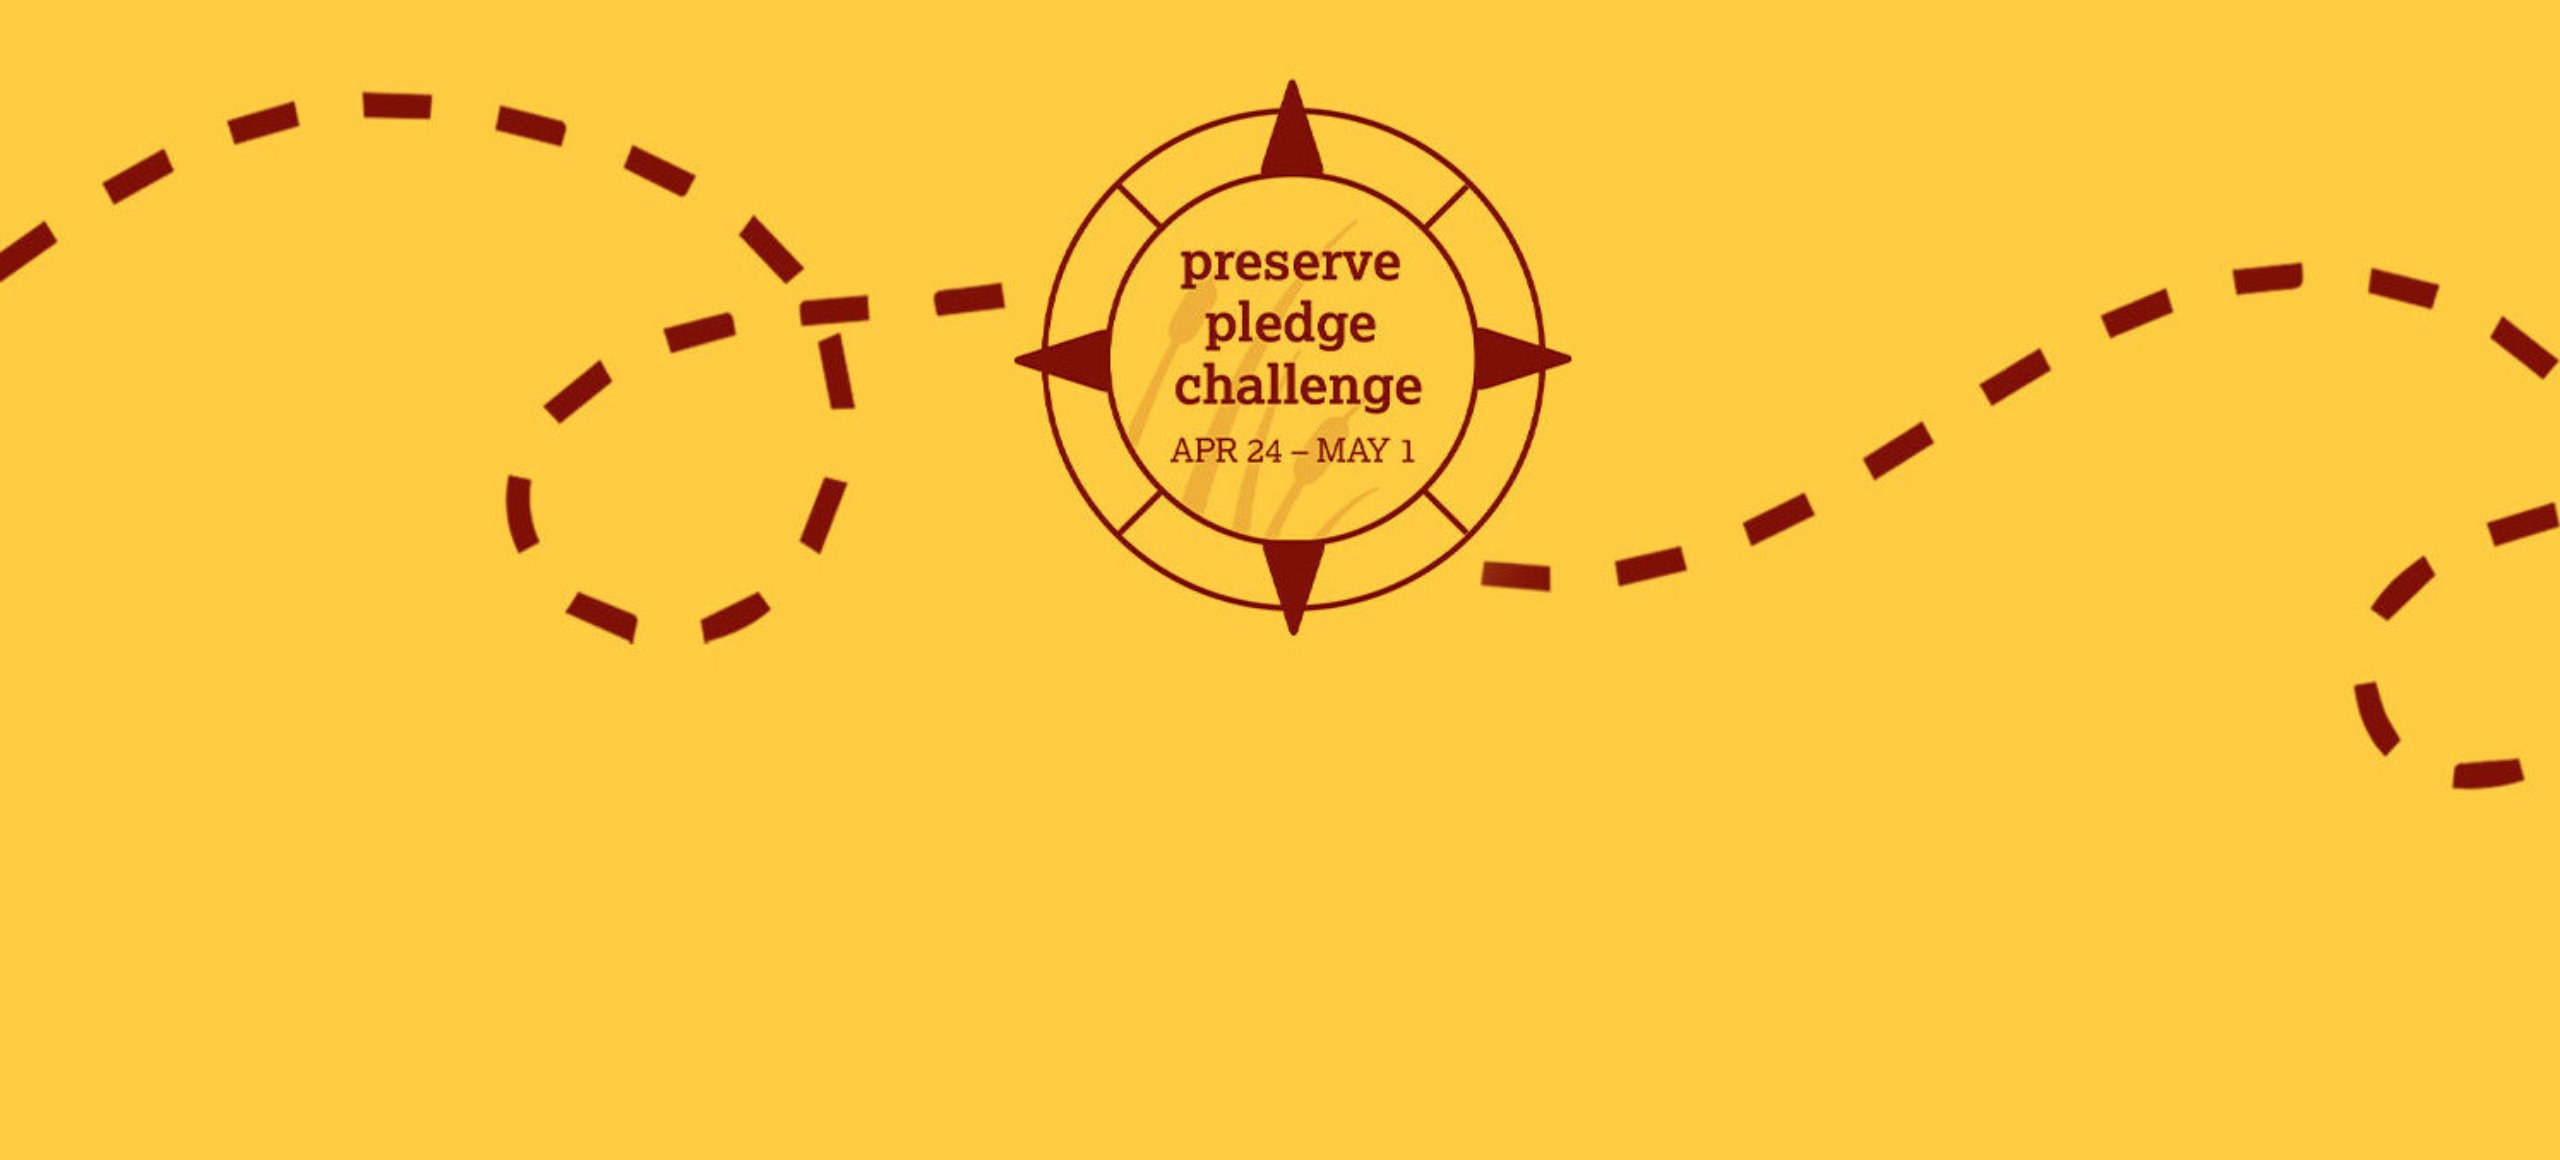 Preserve Pledge Challenge Logo on yellow